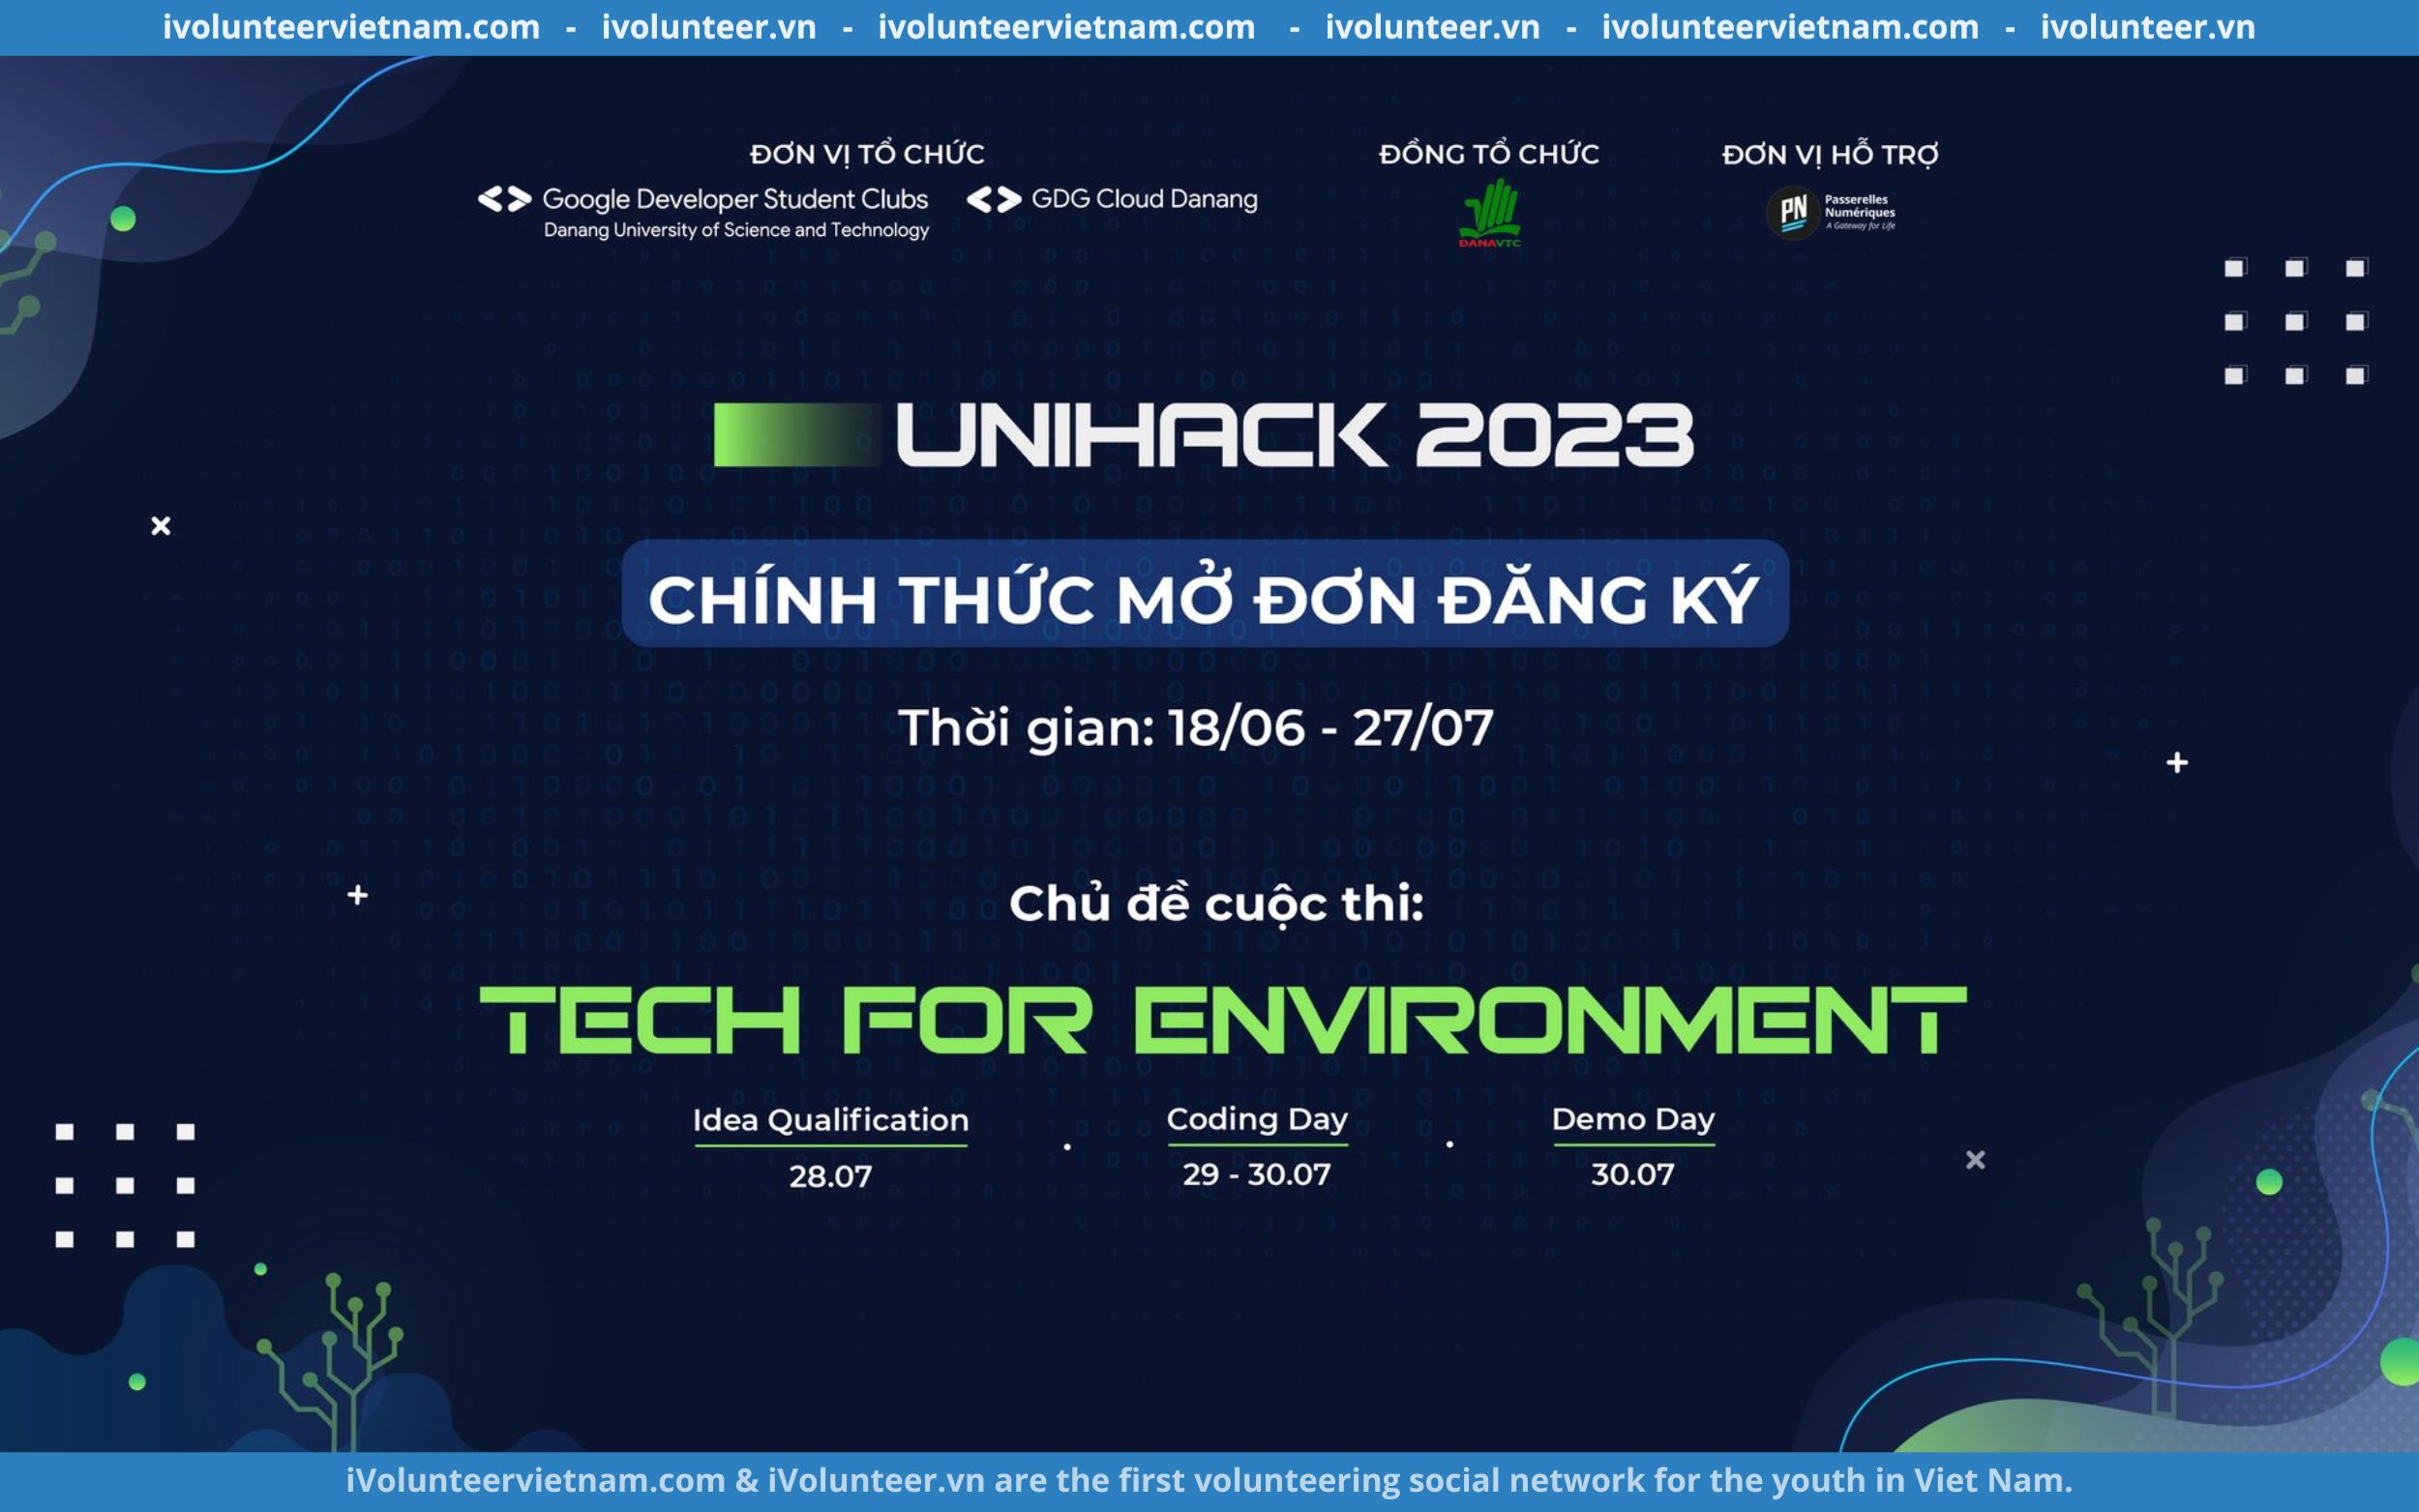 Cuộc Thi UniHack 2023 Về Công Nghệ Chính Thức Mở Đơn Đăng Ký